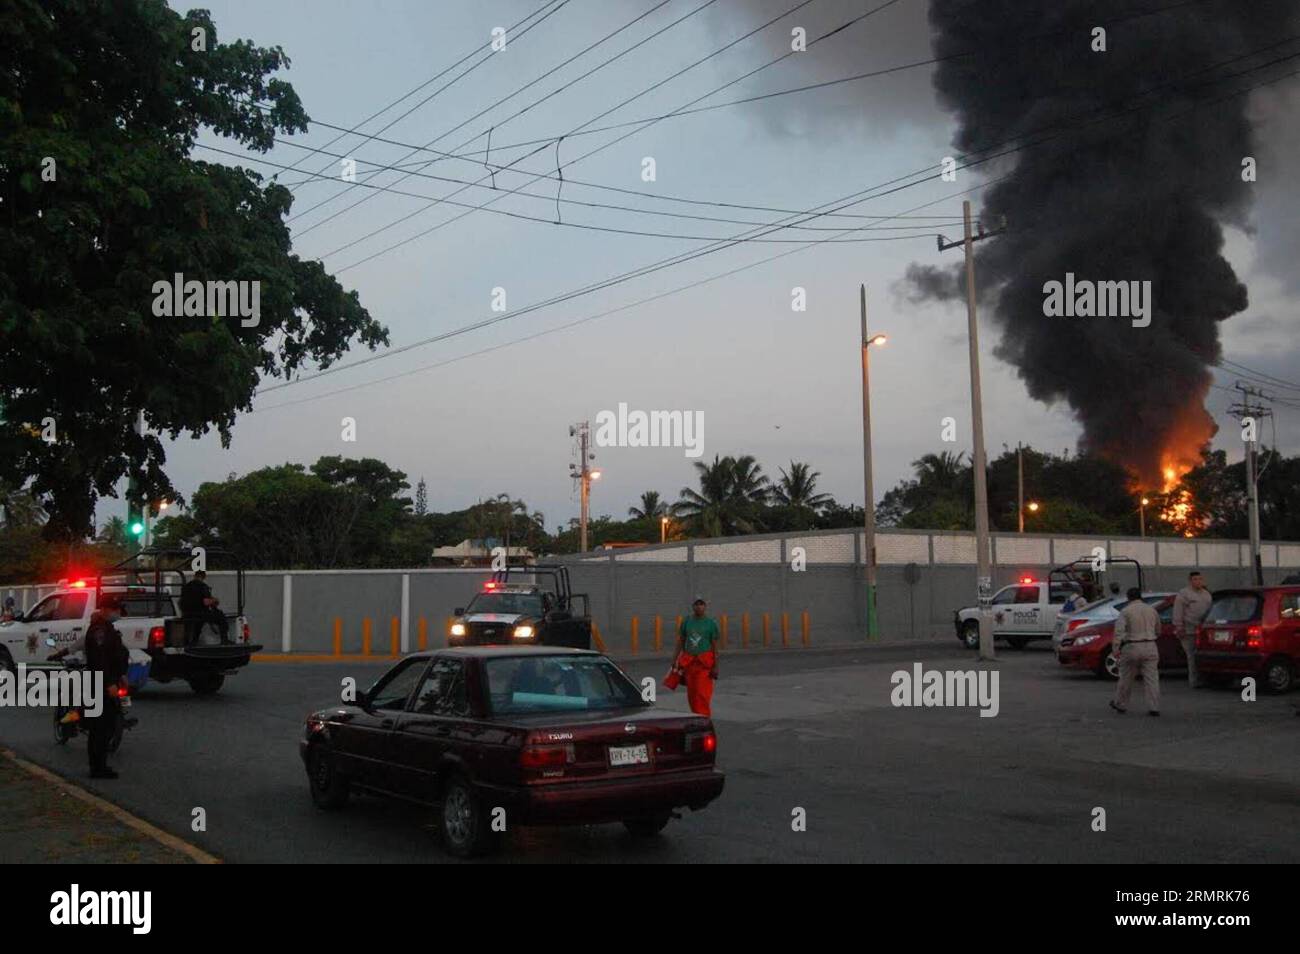 (140723) -- MADERO CITY, 23. Juli 2014 (Xinhua) -- Mitglieder des Sicherheitskorps stehen Wache vor dem Francisco I.. Madero-Raffinerie von Mexican Petroleums nach einer Explosion und einem Brand in Madero City, Tamaulipas, Mexiko, am 23. Juli 2014. Das staatliche Ölunternehmen PEMEX informierte am Mittwoch, dass mindestens neun Peple bei einer Explosion verletzt wurden und das Feuer am frühen Mittwoch in einem Treibstofftank im Francisco I. Madero-Raffinerie in Ciudad Madero, im nordmexikanischen Bundesstaat Tamaulipas. (Xinhua/Sol de Tampico) (fnc) (Ah) STELLTE QUALITÄT ZUR VERFÜGUNG MEXIKO-CIUDAD MADERO-UNFALL-RAFFINERIE Stockfoto